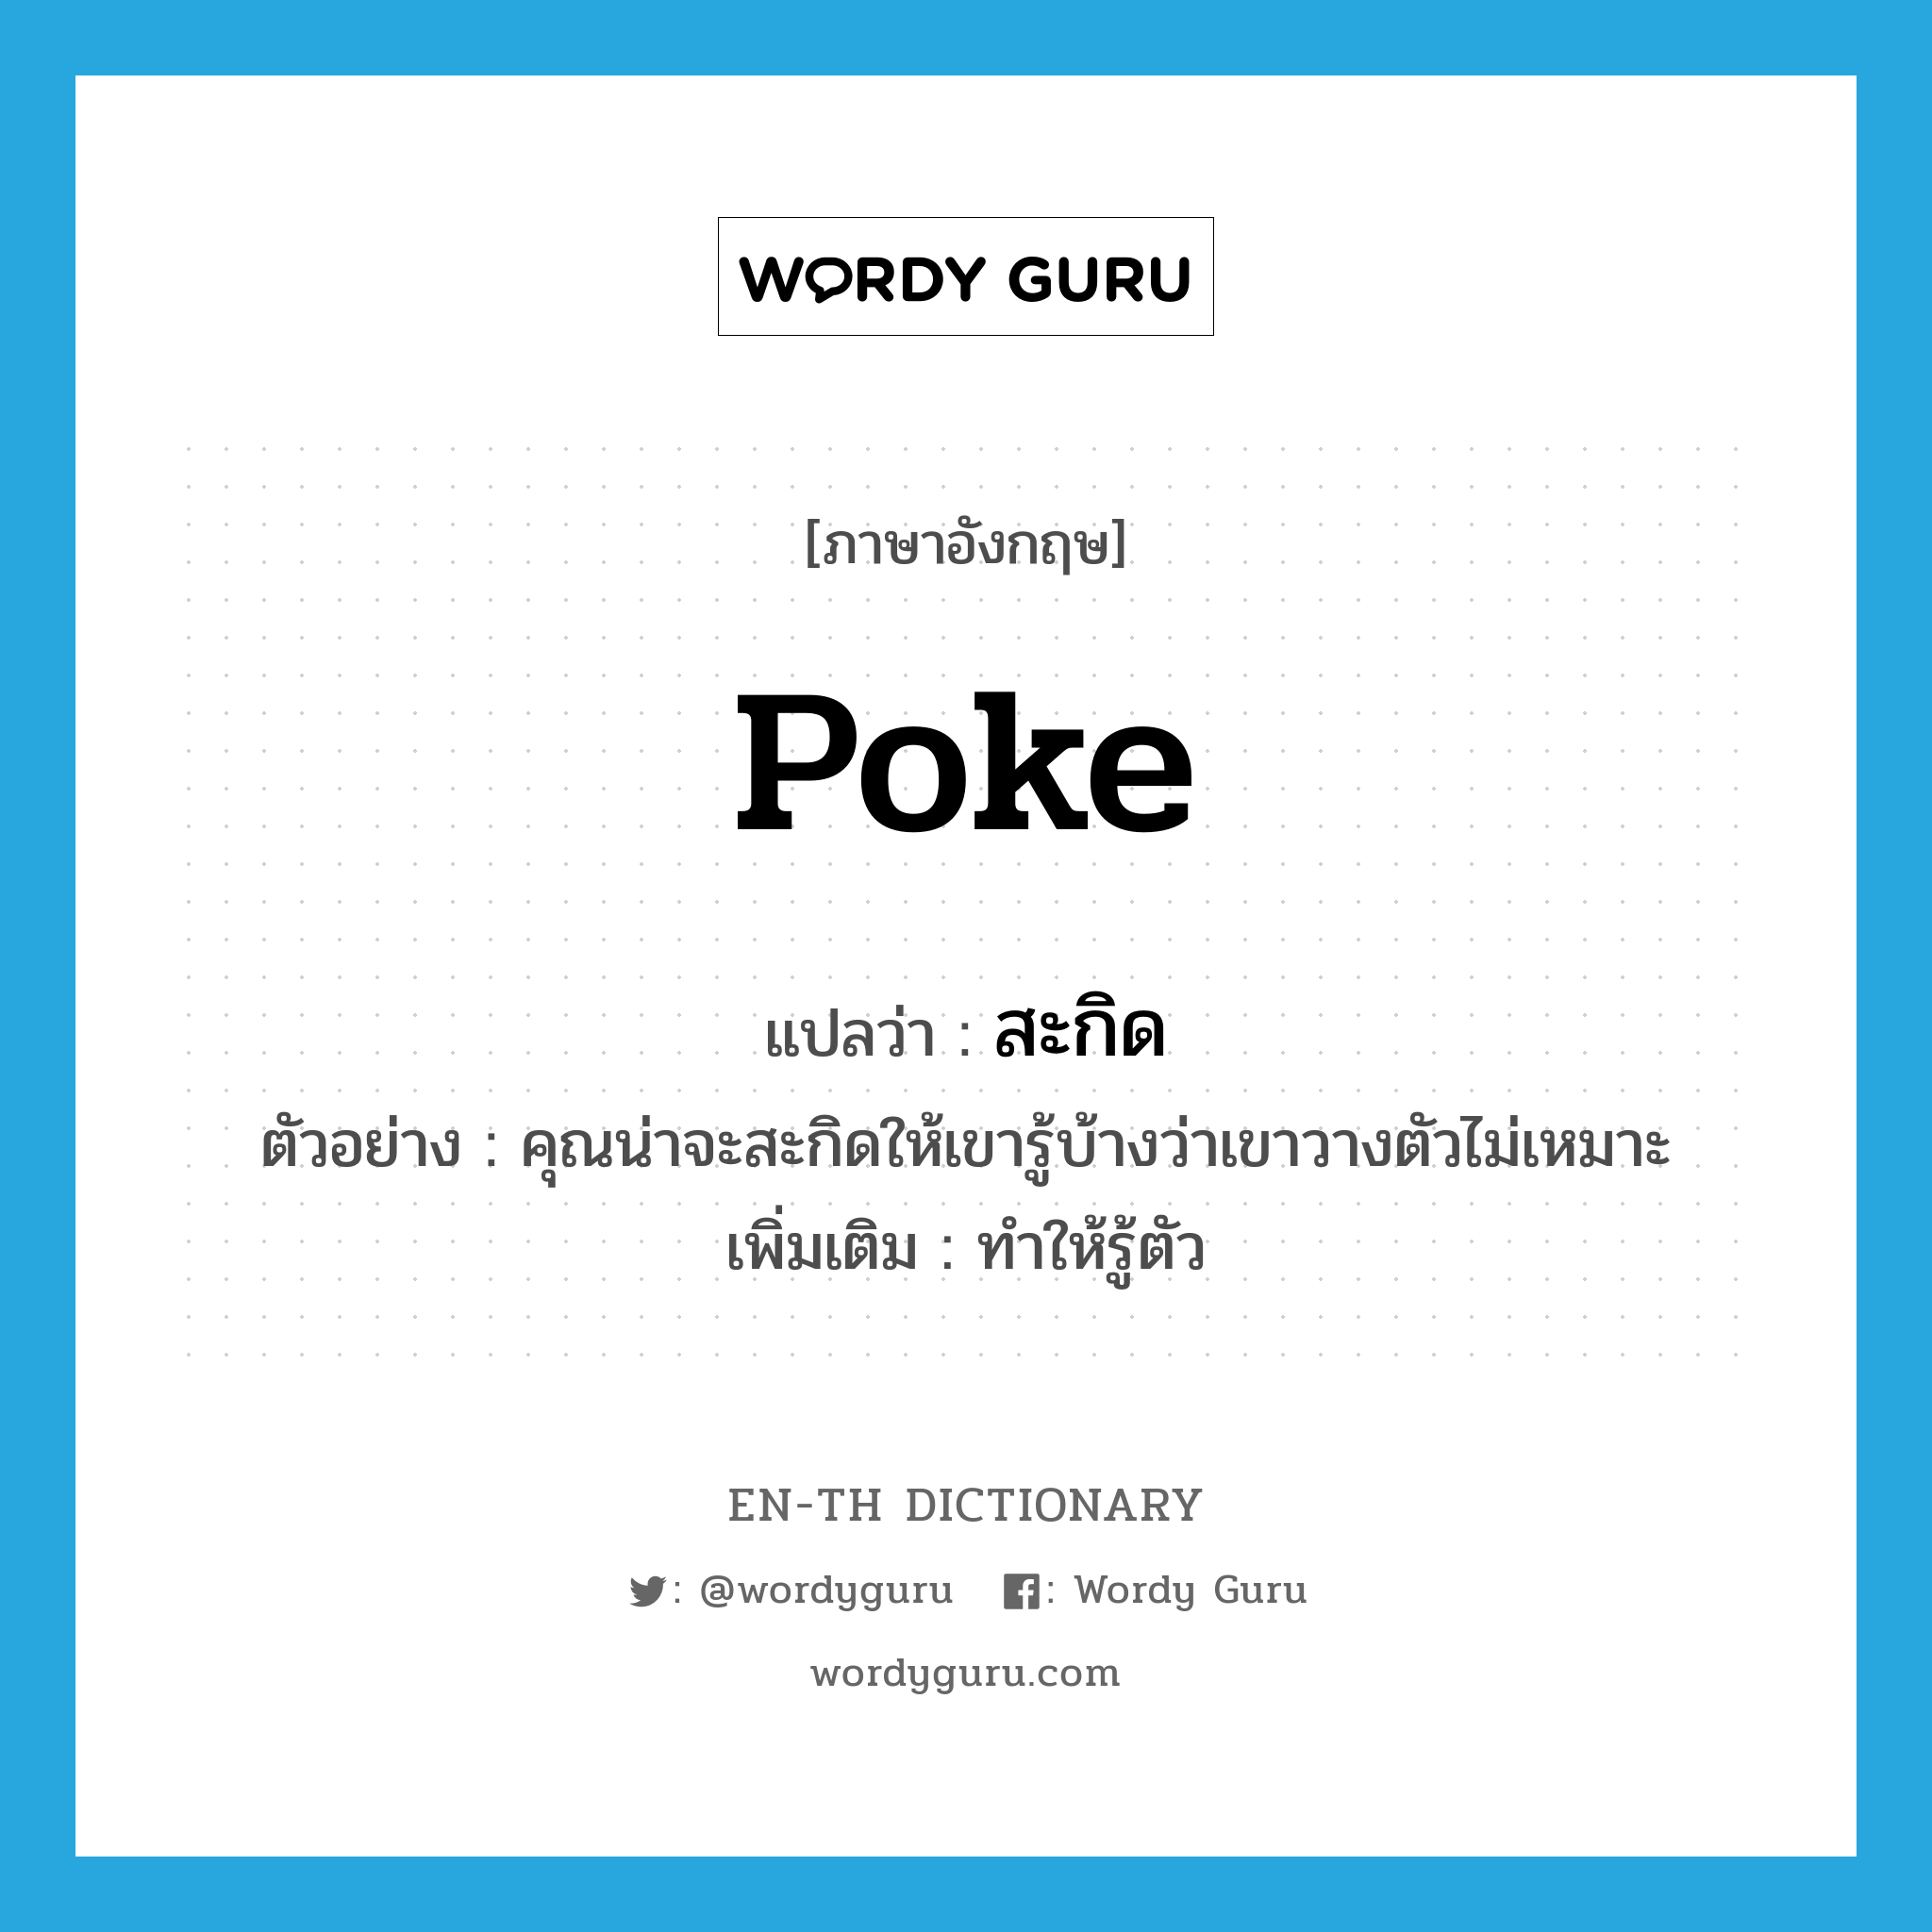 poke แปลว่า?, คำศัพท์ภาษาอังกฤษ poke แปลว่า สะกิด ประเภท V ตัวอย่าง คุณน่าจะสะกิดให้เขารู้บ้างว่าเขาวางตัวไม่เหมาะ เพิ่มเติม ทำให้รู้ตัว หมวด V